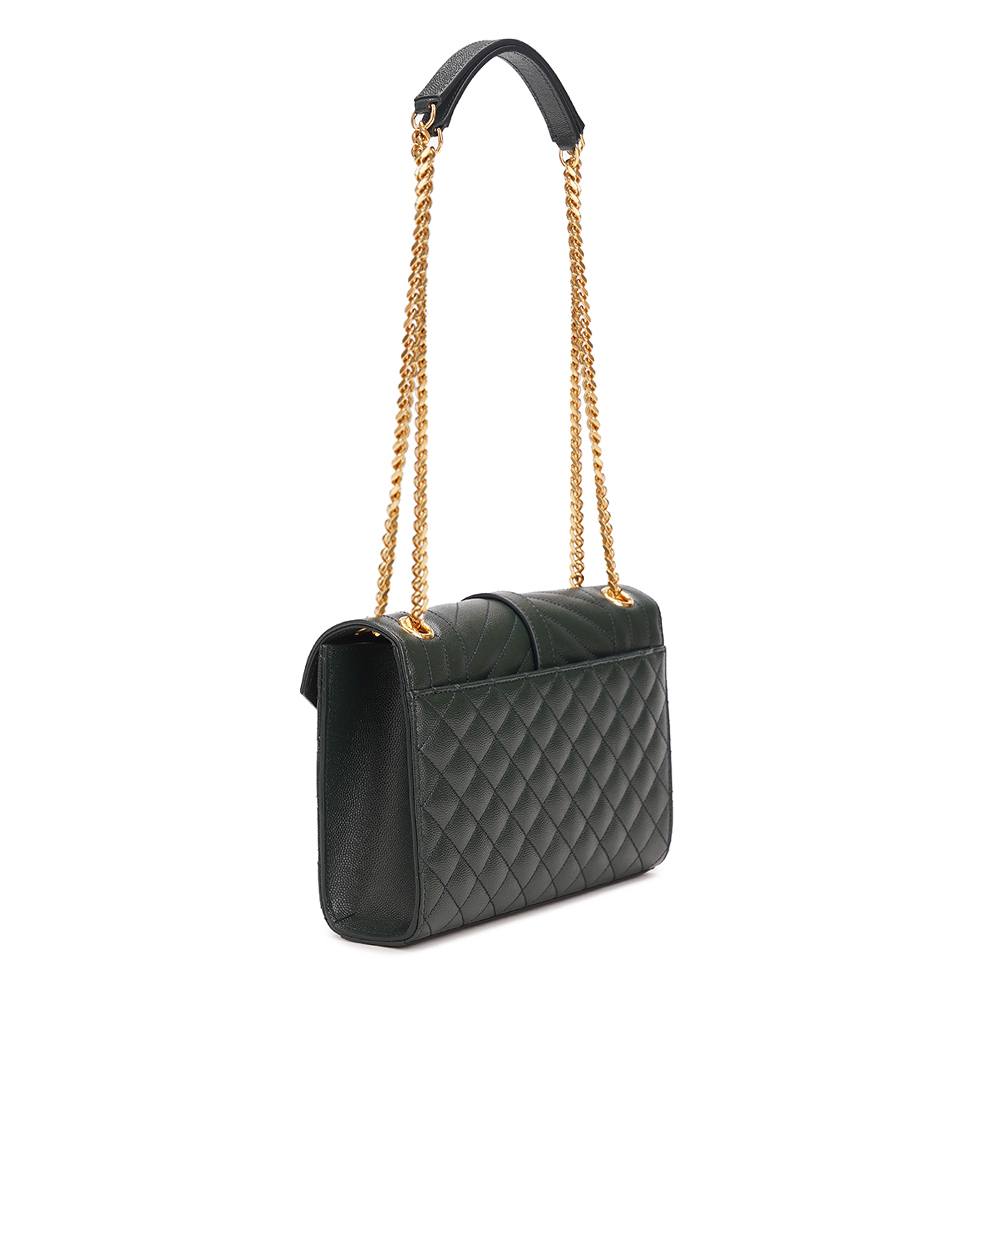 Кожаная сумка Envelope Medium Saint Laurent 600185-BOW91, темно-зеленый цвет • Купить в интернет-магазине Kameron